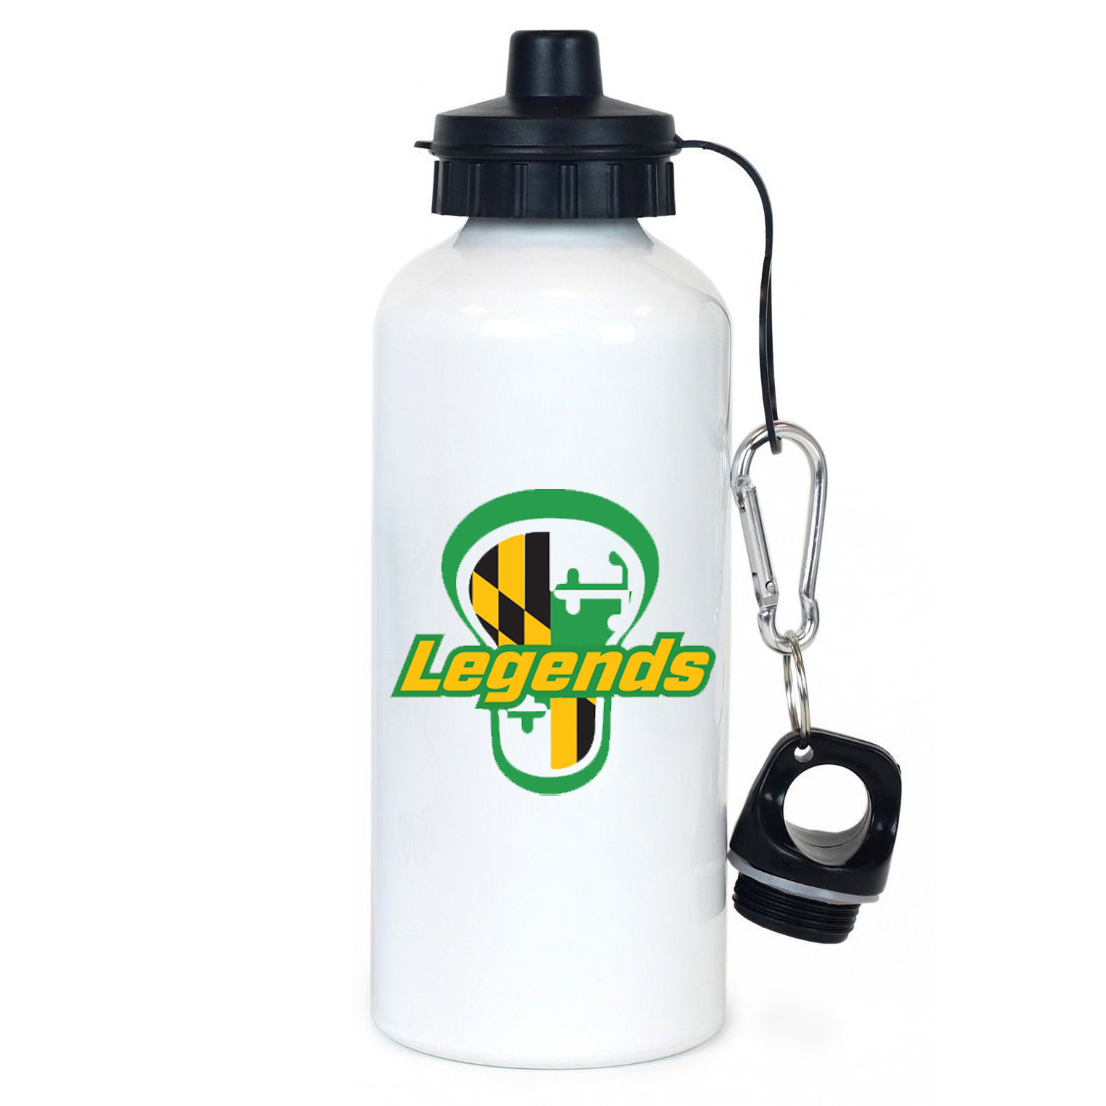 Legends Lacrosse Team Water Bottle